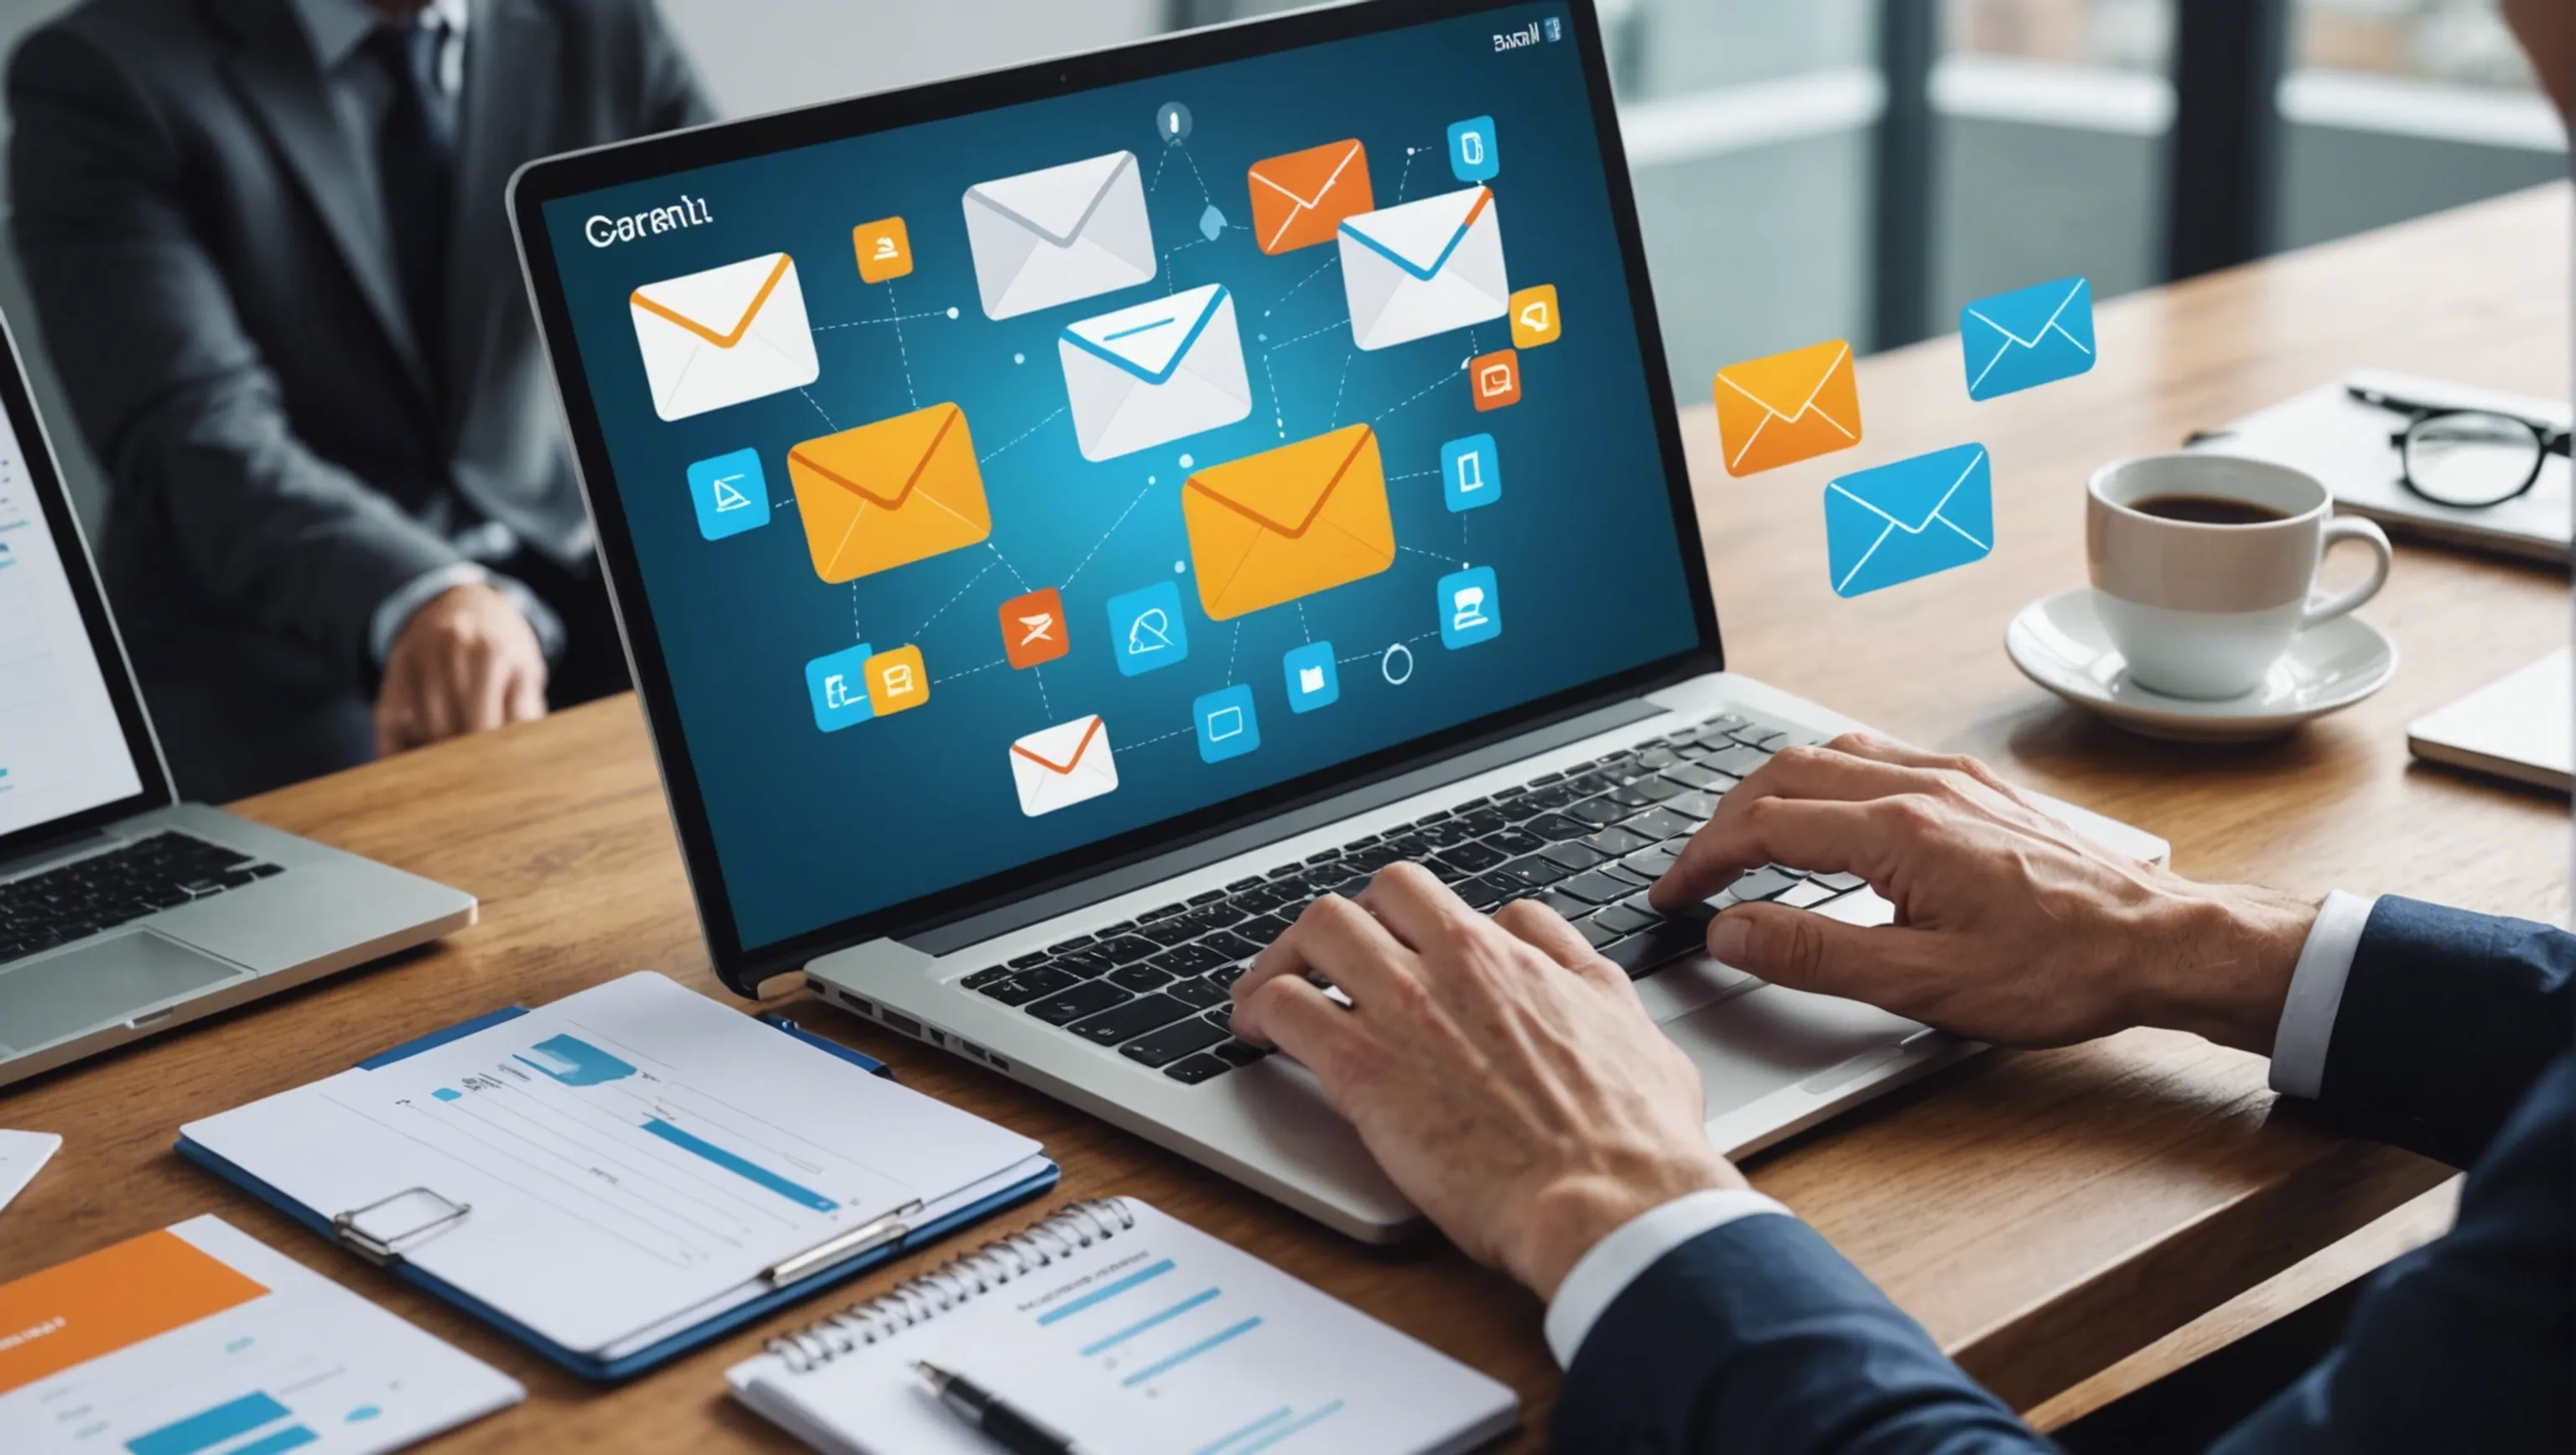 Intégration avec les emails pour améliorer l'efficacité de votre entreprise